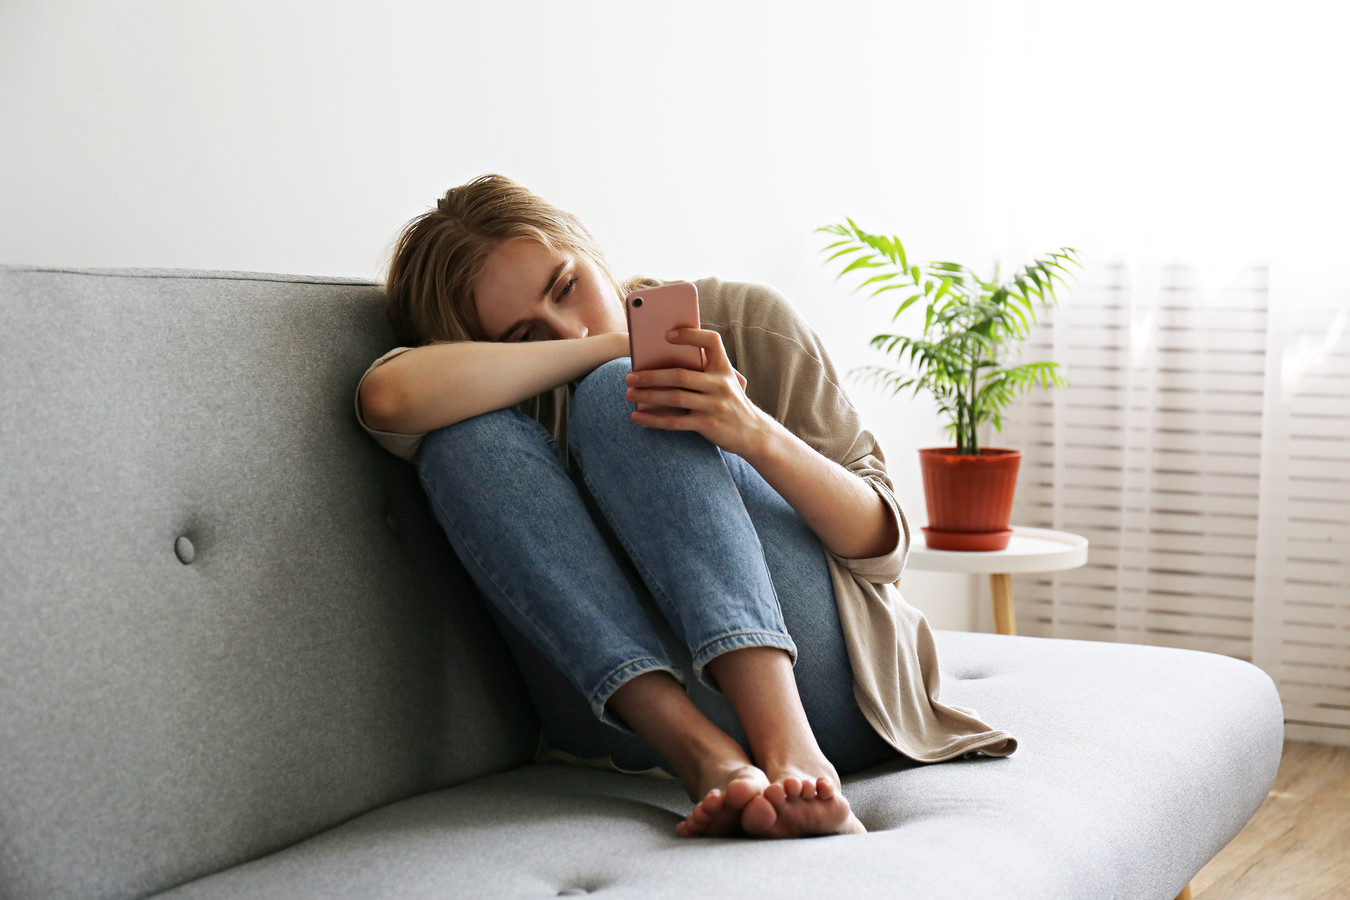 Ter illustratie. Online behandeling bij depressie of angsten kan overal via je telefoon, waar je ook bent door te beeldbellen of chatten met de psycholoog.